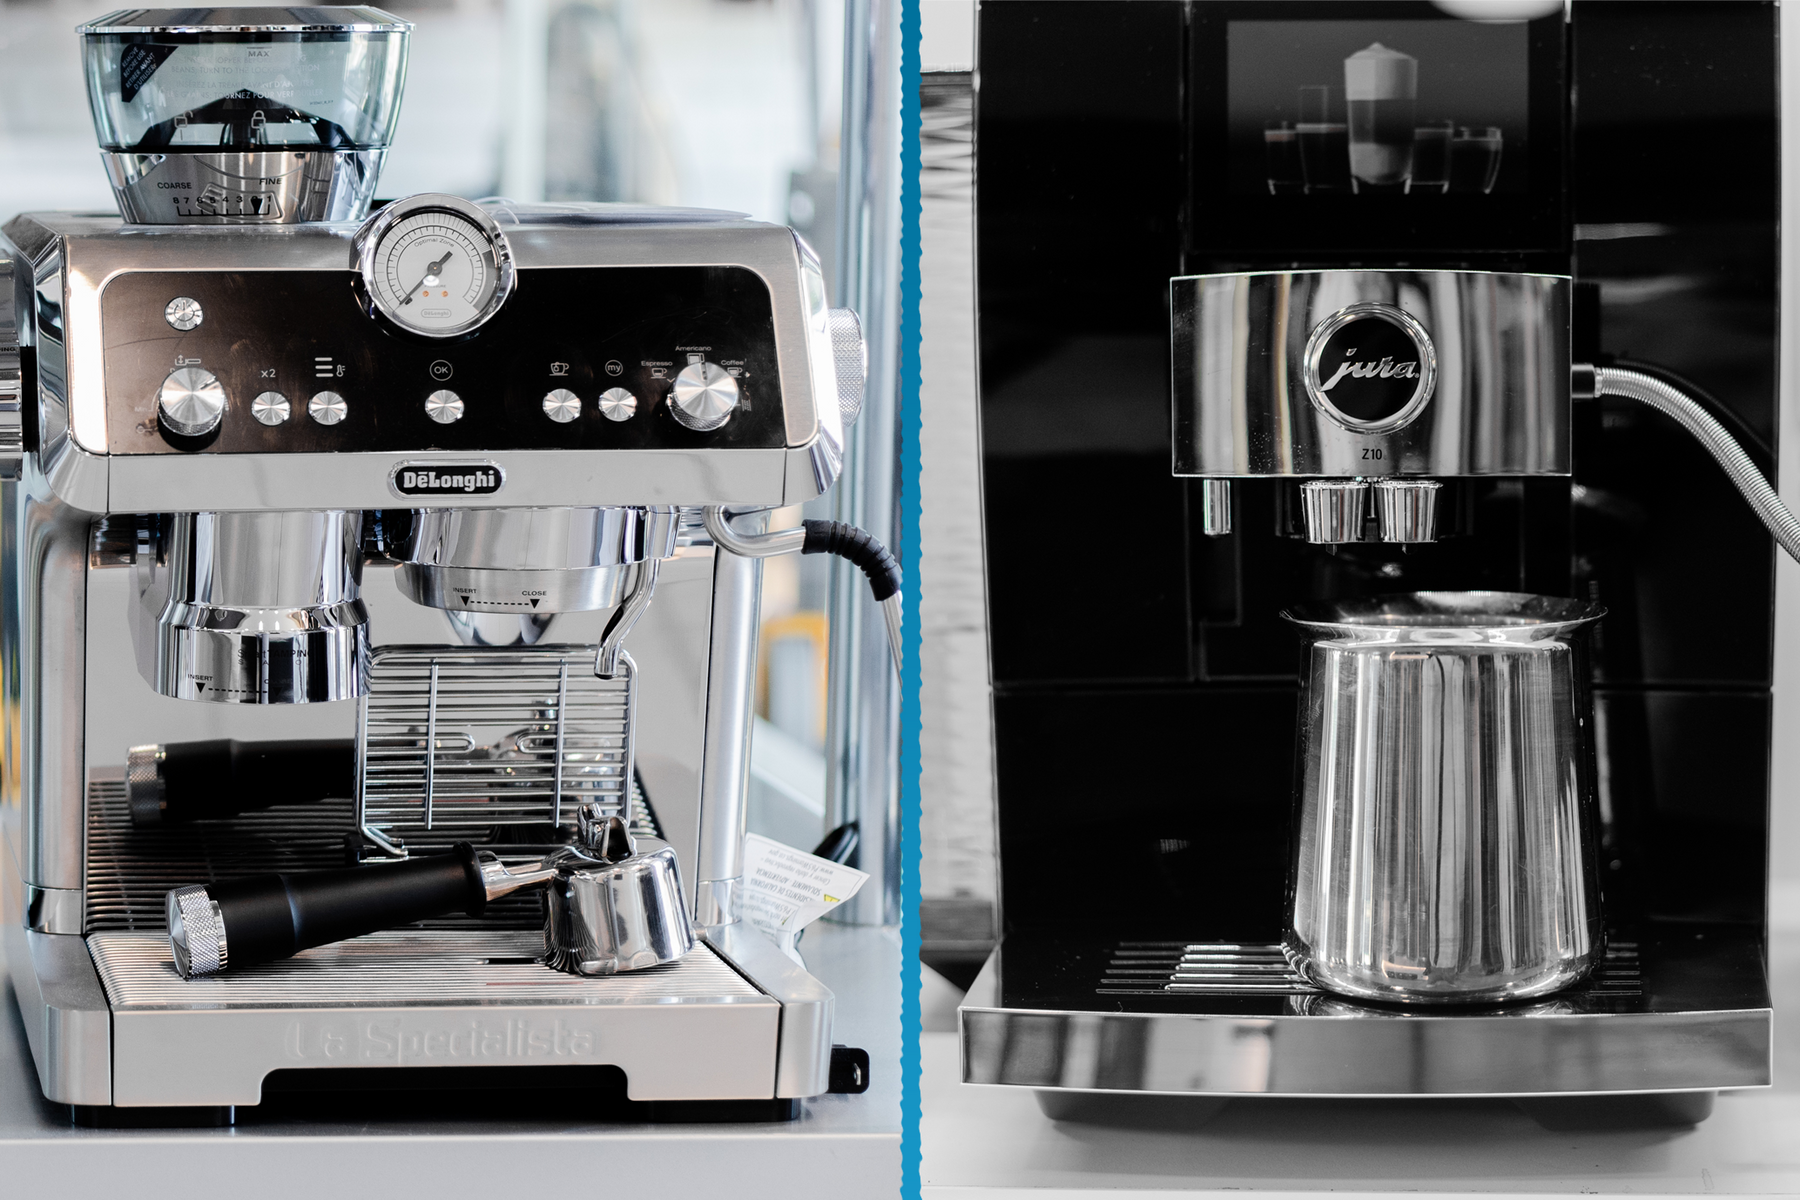 Machine Espresso automatique vs manuelle : La bonne machine selon vos besoins.